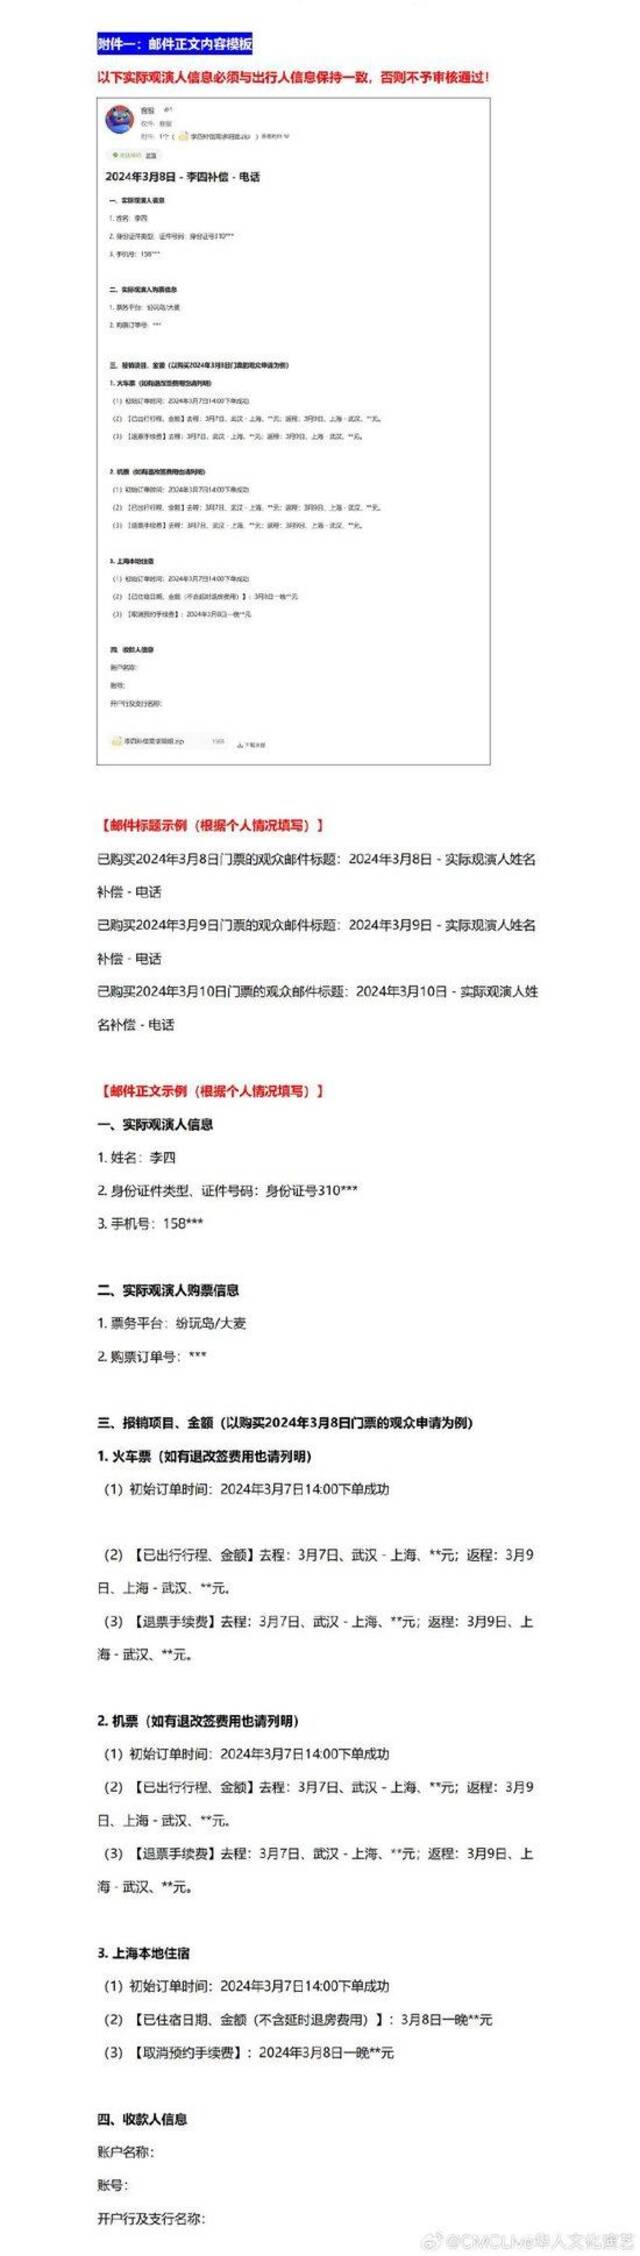 《张学友60+巡回演唱会-上海站》三场演出延期及补偿方案公布